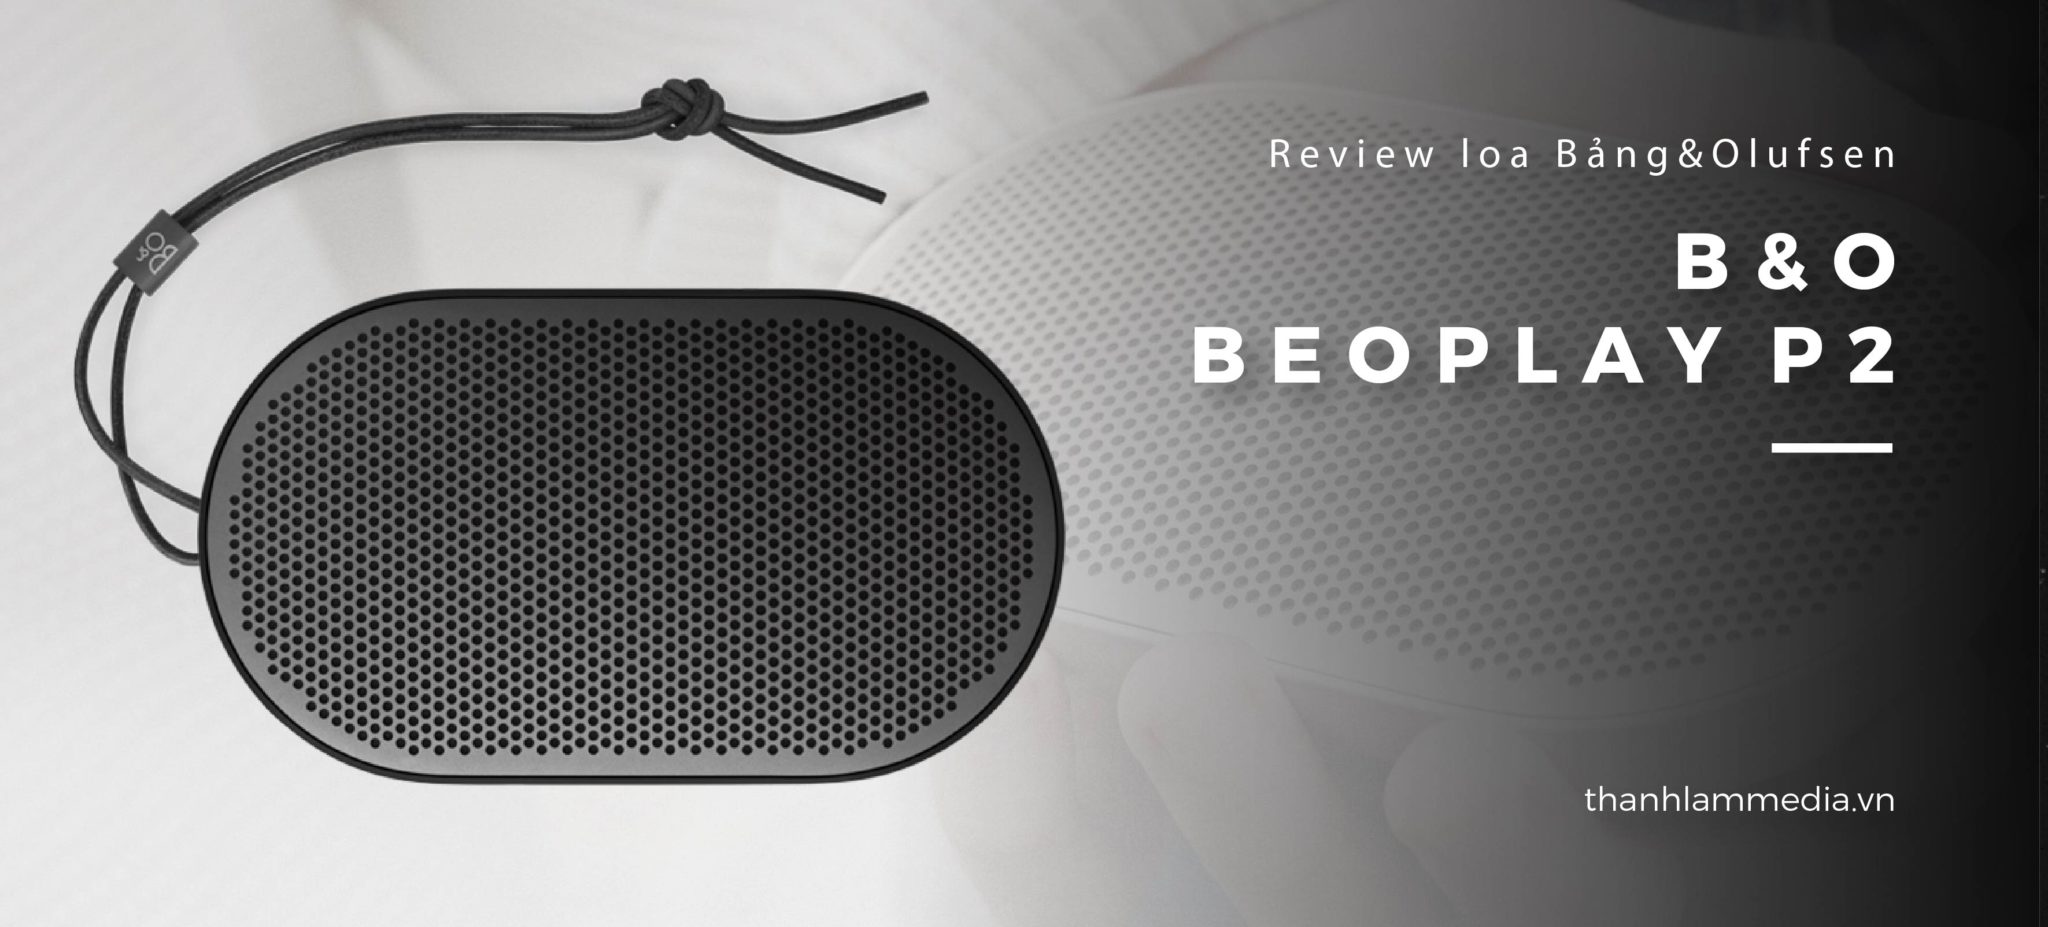 Loa B&O Beoplay P2: Thiết kế nhỏ gọn, âm thanh ấn tượng 23